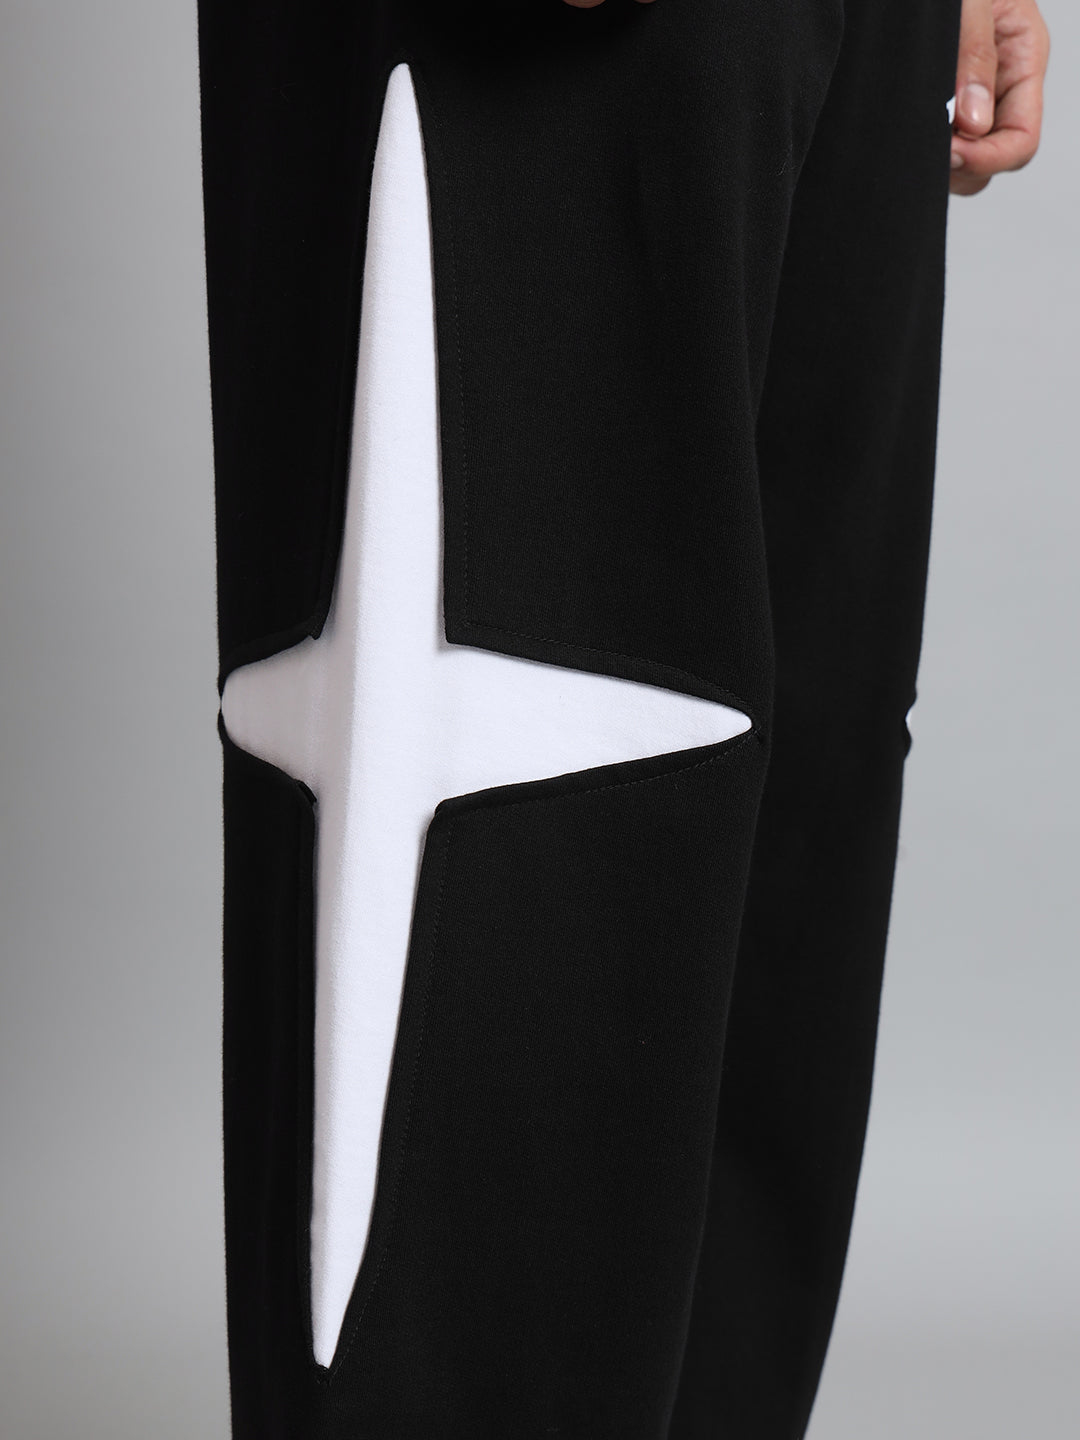 Crossed Stars Pants (Black) - Wearduds